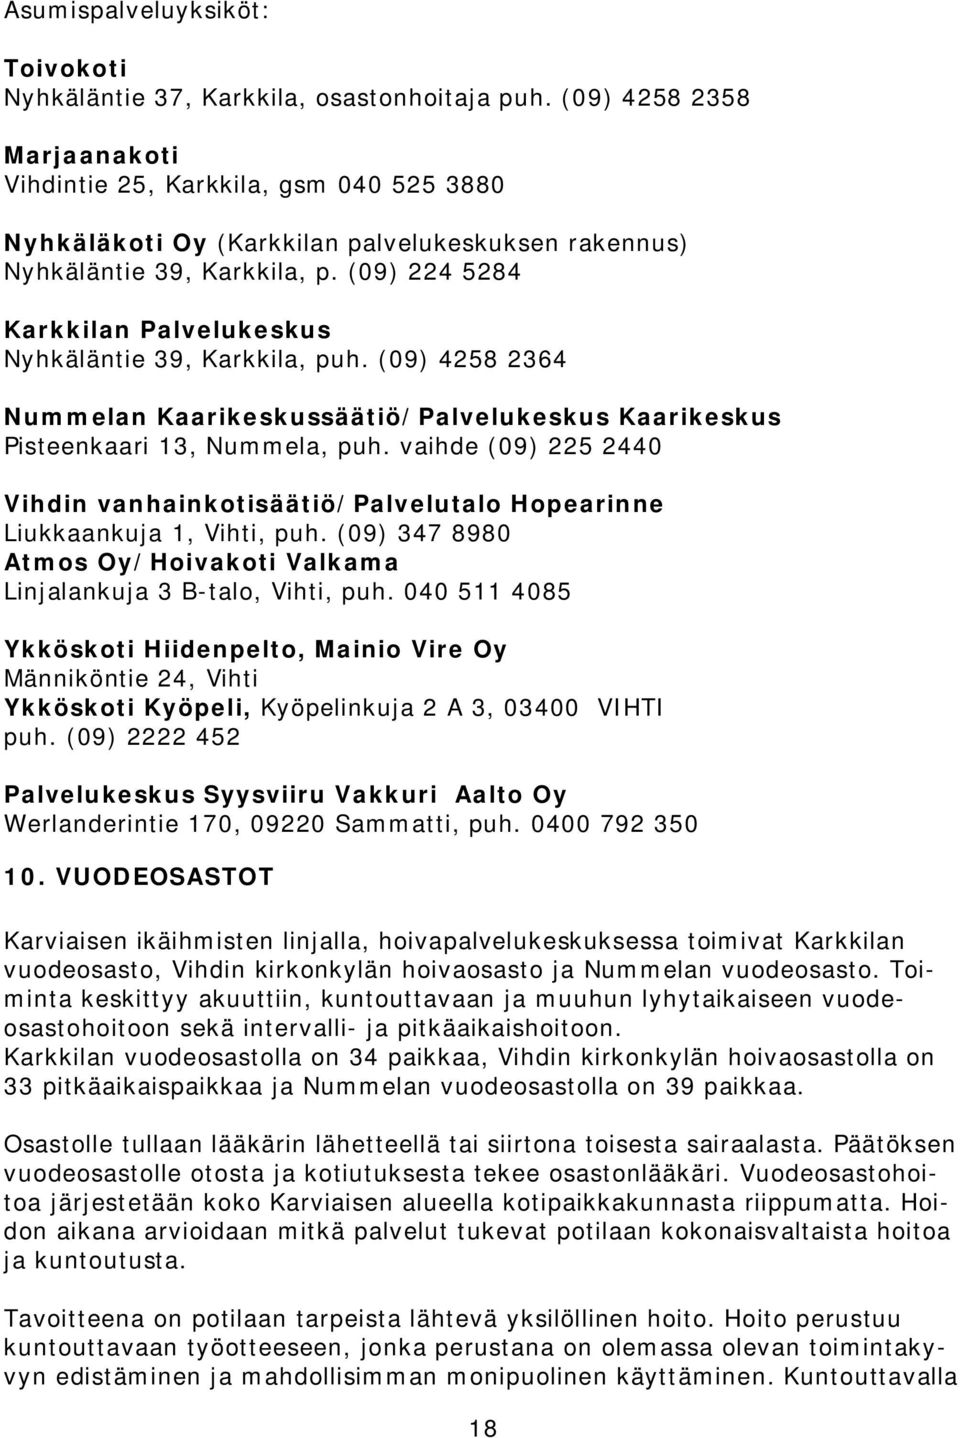 (09) 224 5284 Karkkilan Palvelukeskus Nyhkäläntie 39, Karkkila, puh. (09) 4258 2364 Nummelan Kaarikeskussäätiö/Palvelukeskus Kaarikeskus Pisteenkaari 13, Nummela, puh.